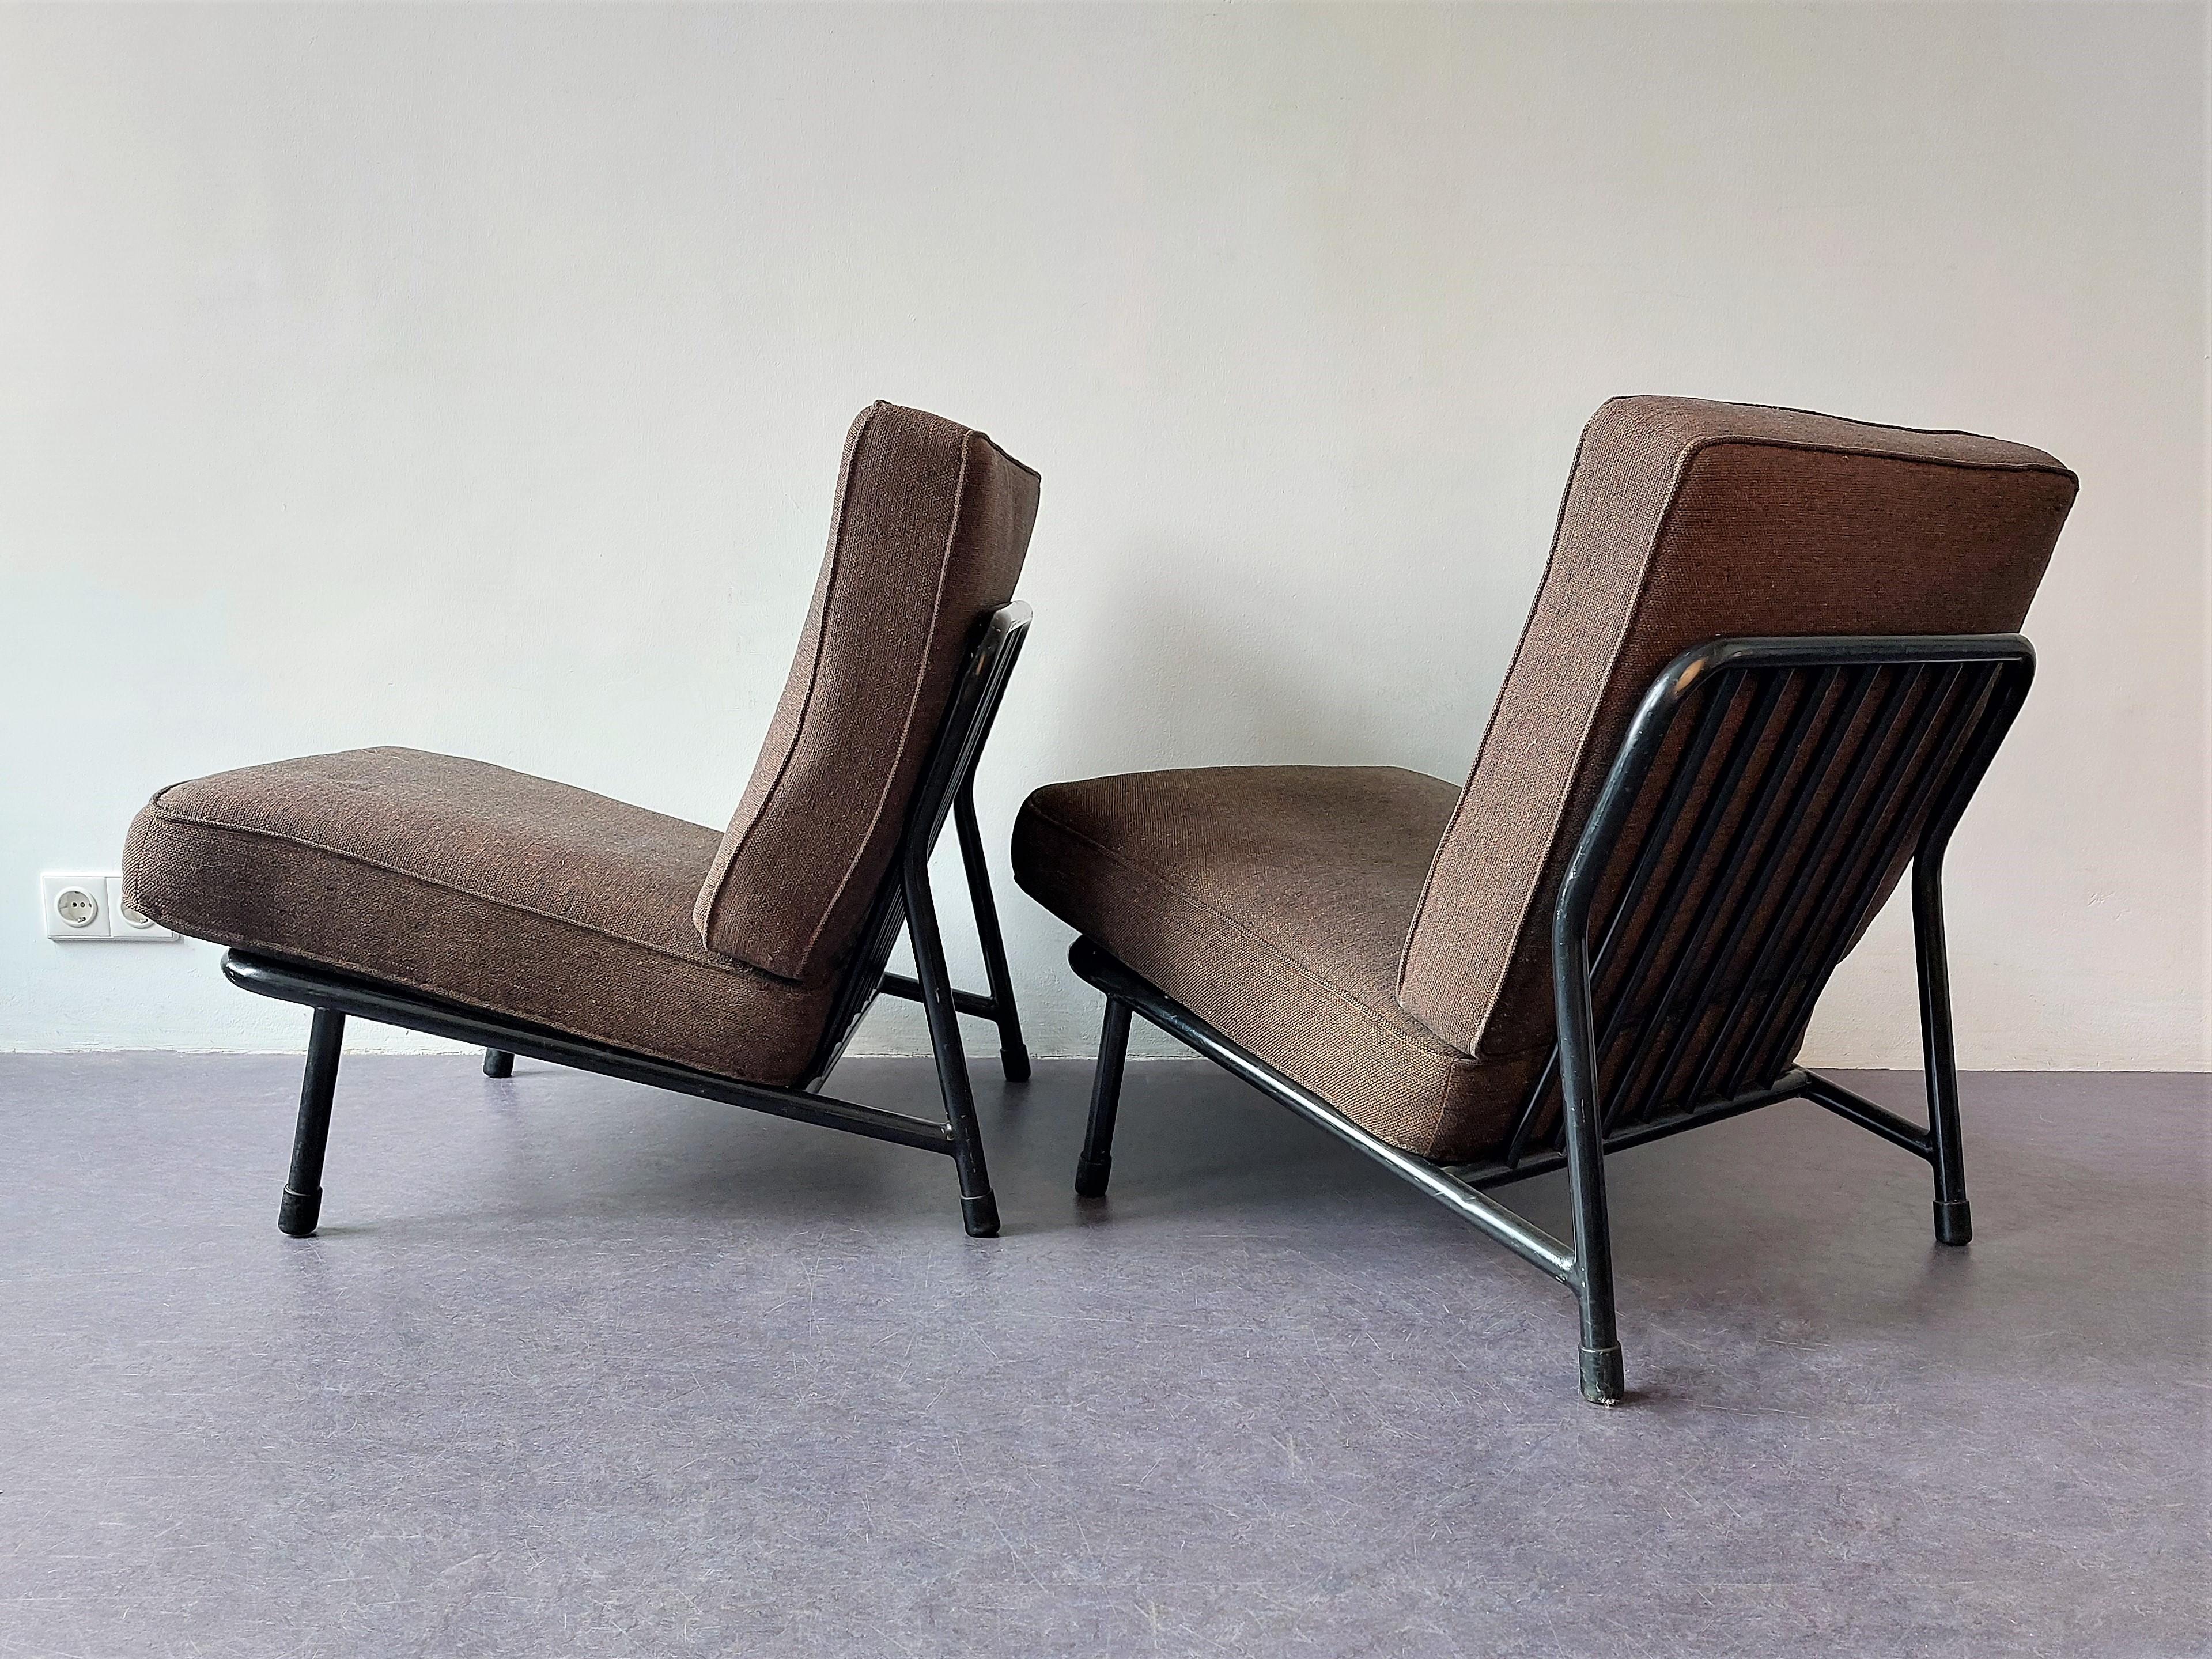 Dieser Loungesessel wurde von Alf Svensson für DUX in Schweden in den späten 1950er oder frühen 1960er Jahren entworfen. Diese Metallversionen wurden von Artifort in den Niederlanden verkauft. Aus diesem Grund werden sie manchmal Artifort